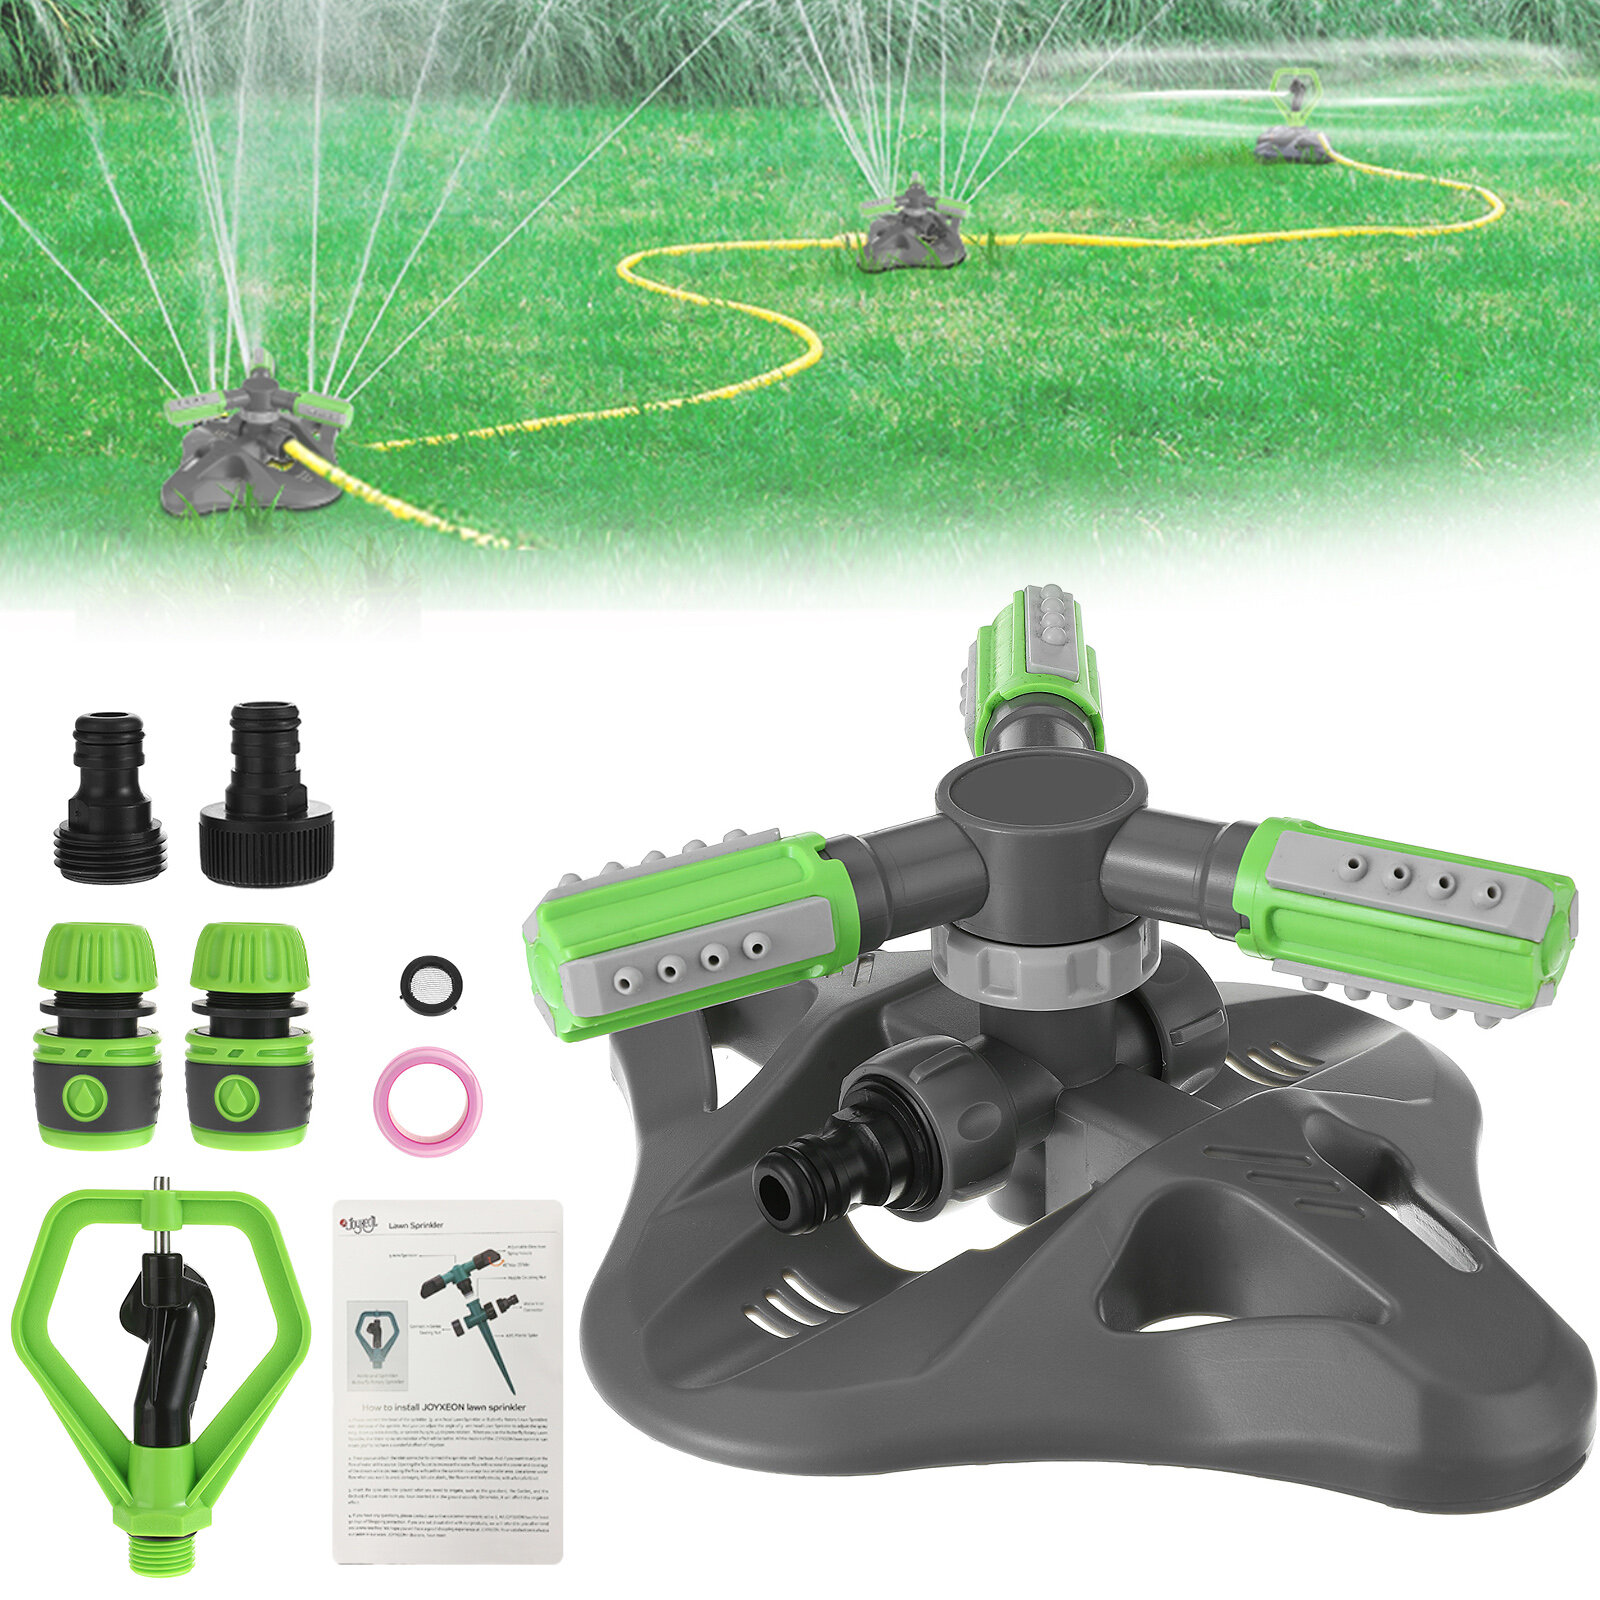 Στα 17.82 € από αποθήκη Κίνας | JOYXEON 360° Rotating 3 Arm Lawn Sprinkler Set 3-mode Garden Sprinkler